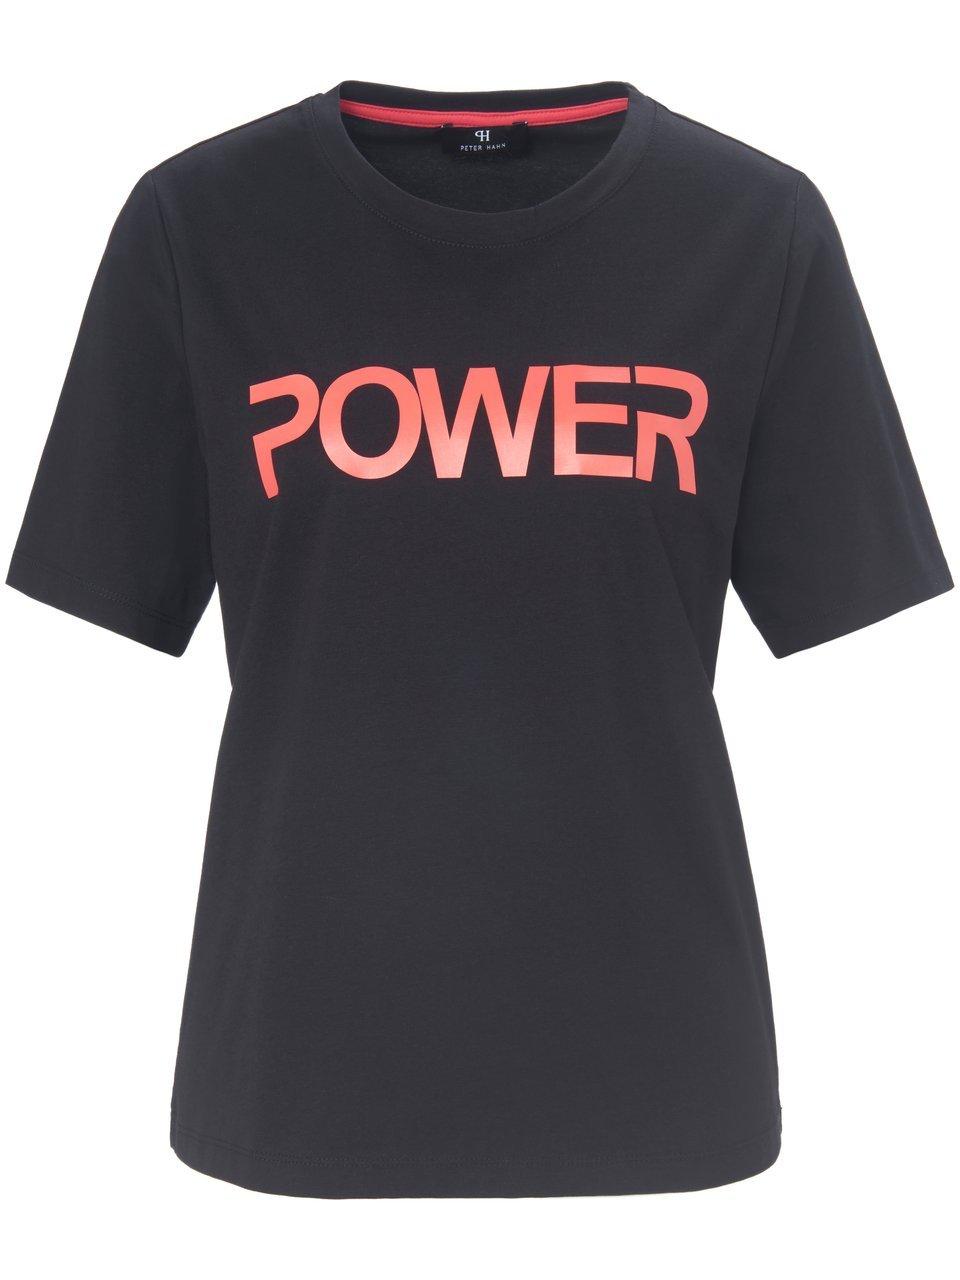 Le T-shirt inscription Power  Peter Hahn noir